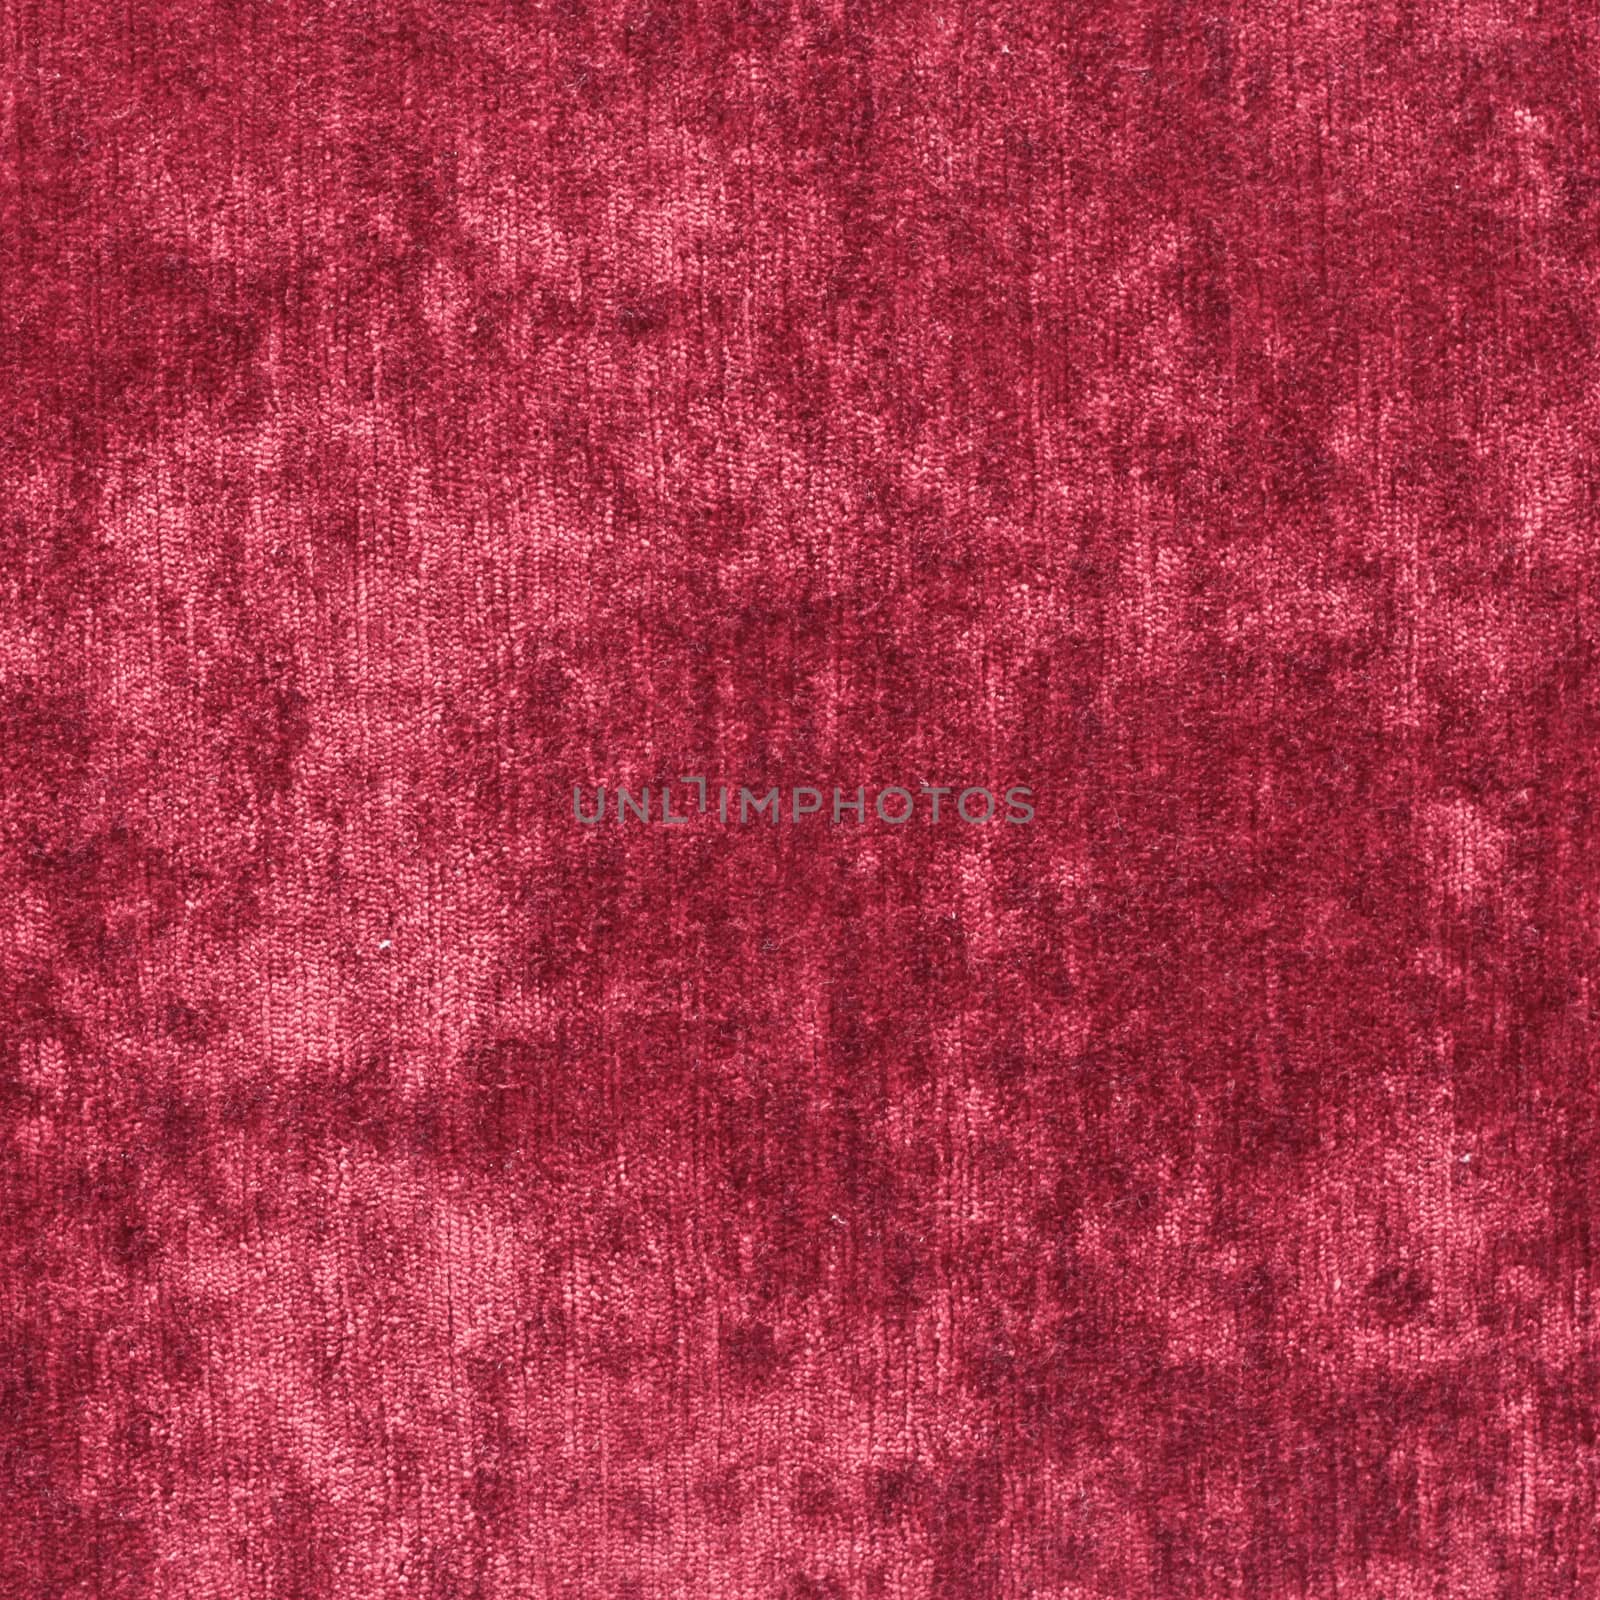 Red velvet by trgowanlock